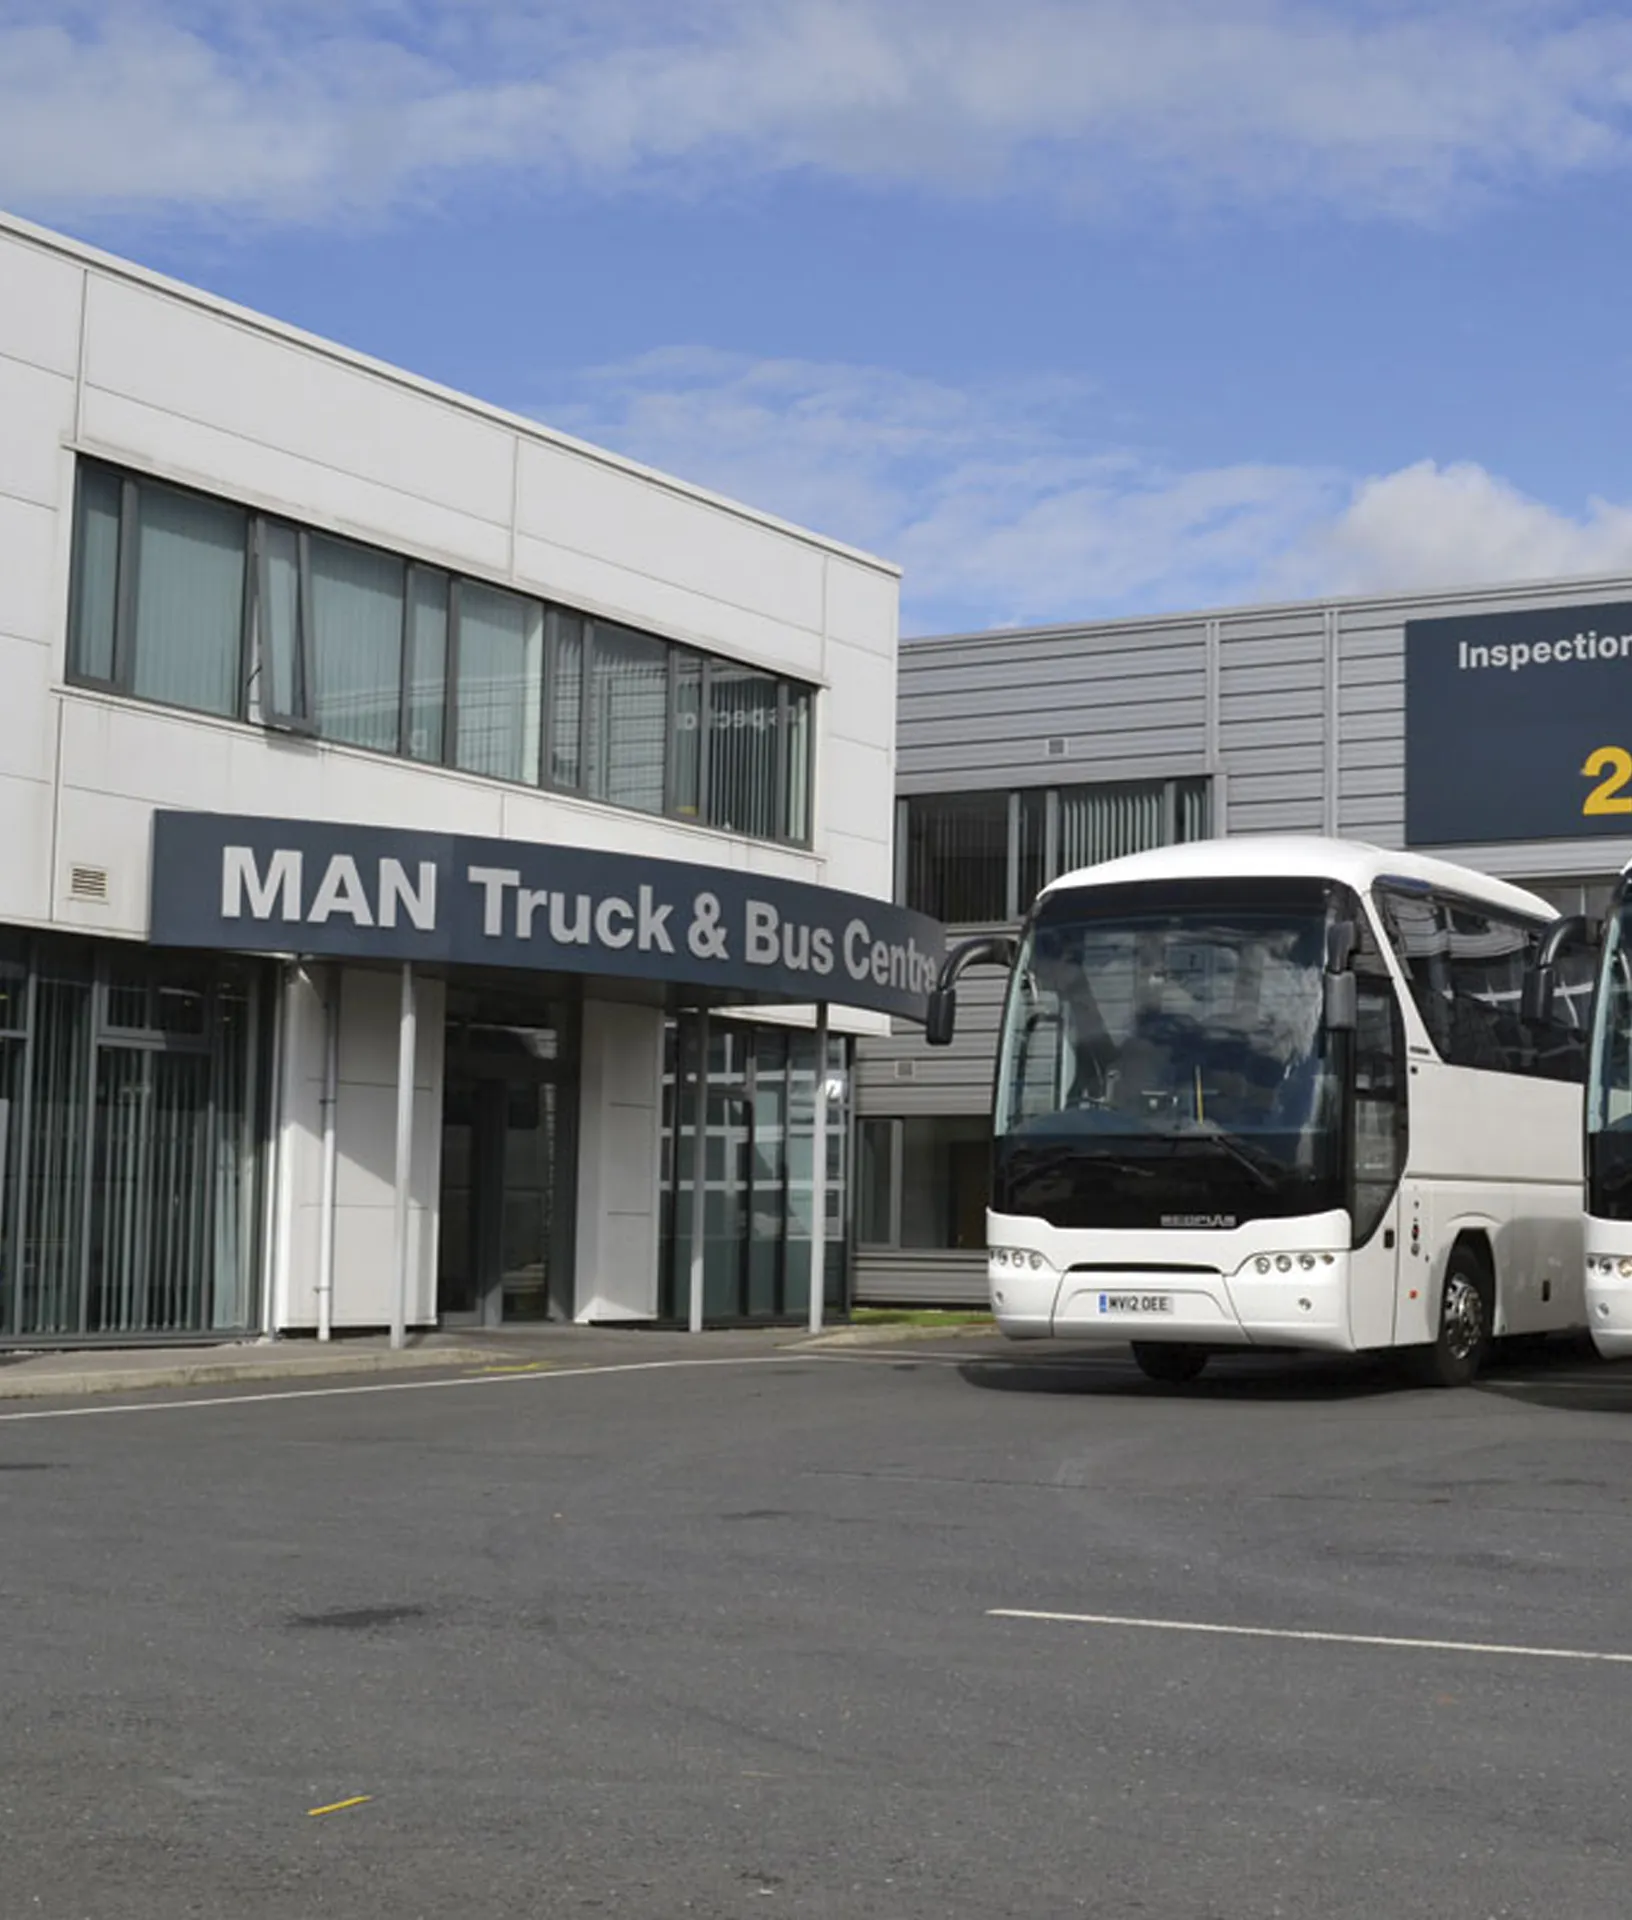 MAN Bus & Truck